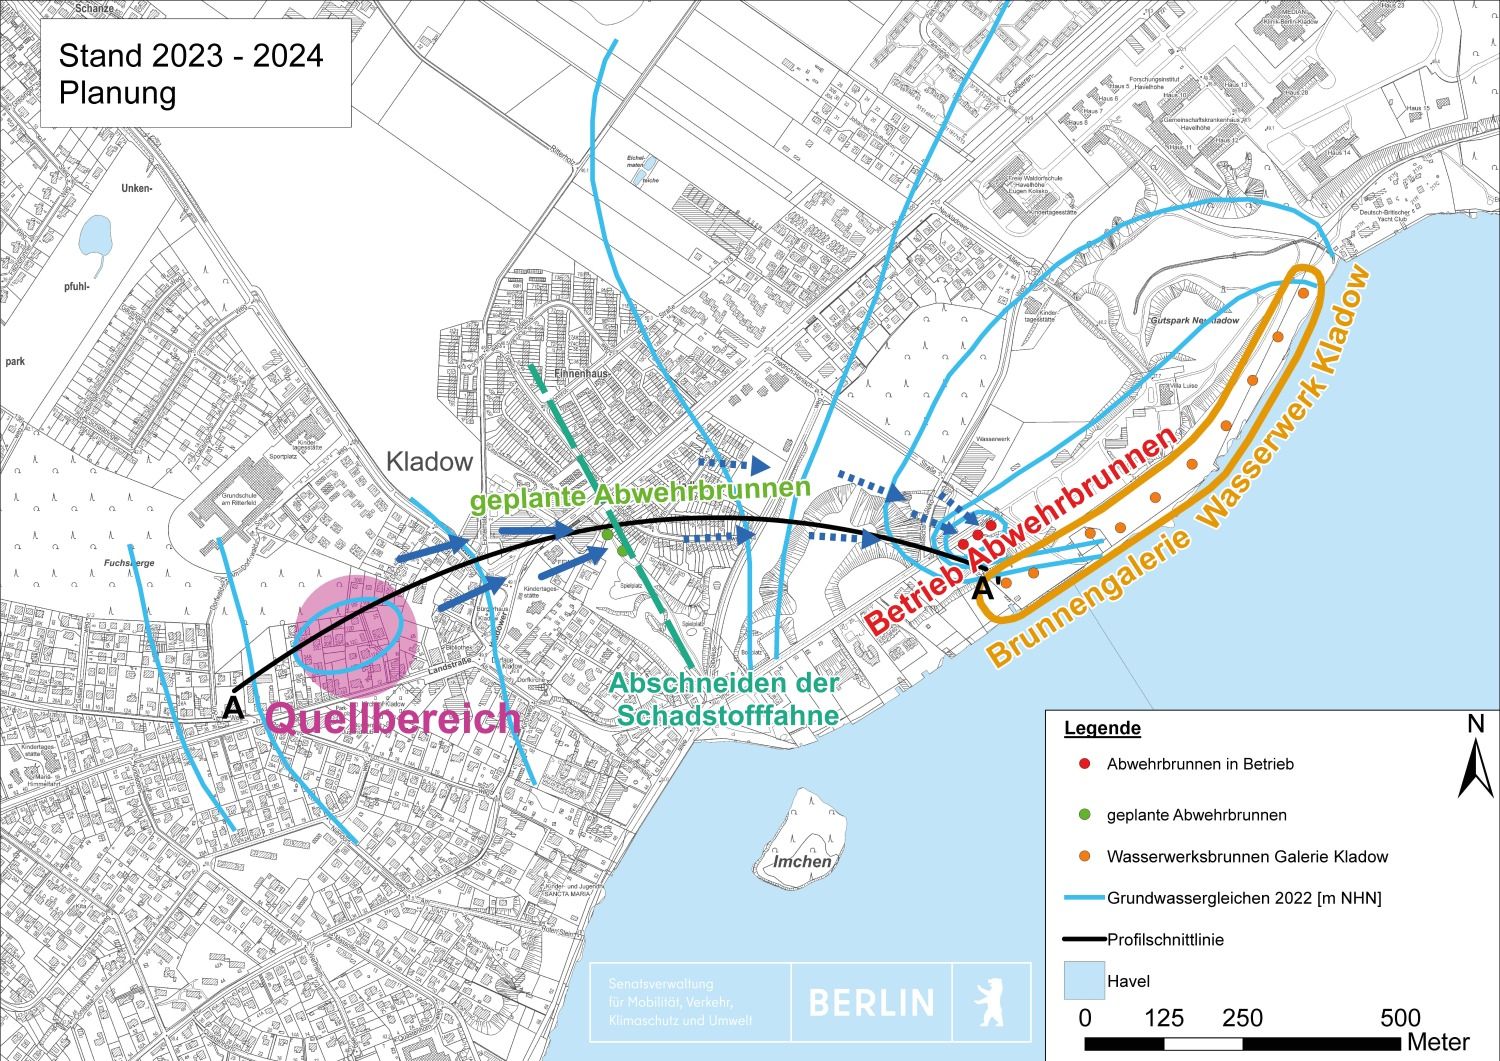 Bildvergrößerung: 2023 - 2024 Schematisierter Lageplan Projektgebiet Kladow mit Darstellung der LCKW-Verlagerung 